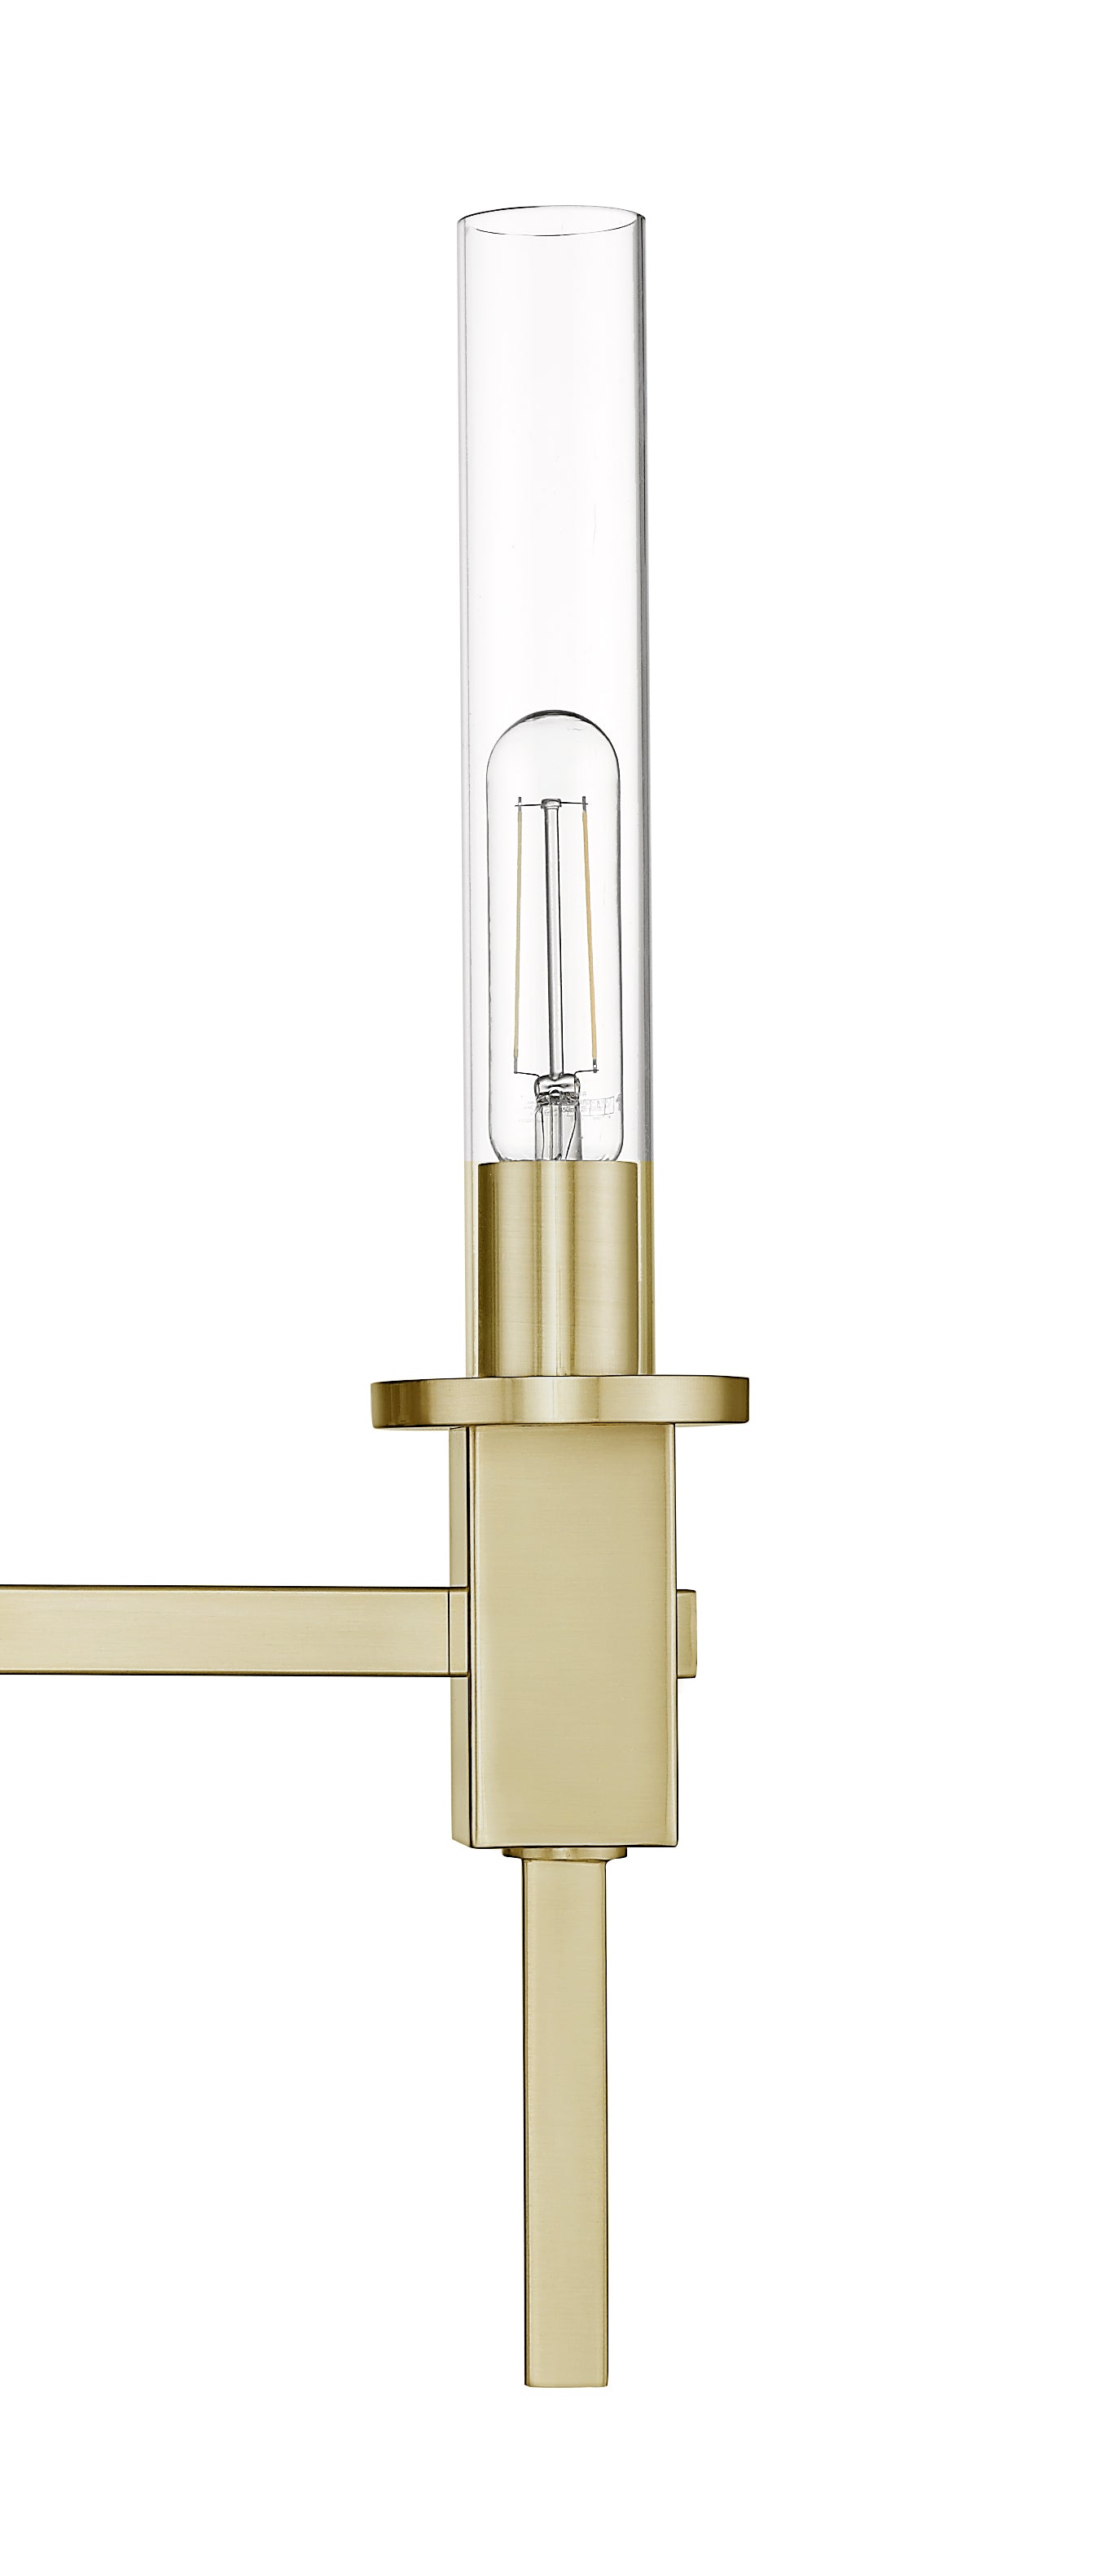 Gold glass tube wall light with 3 light - Vivio Lighting